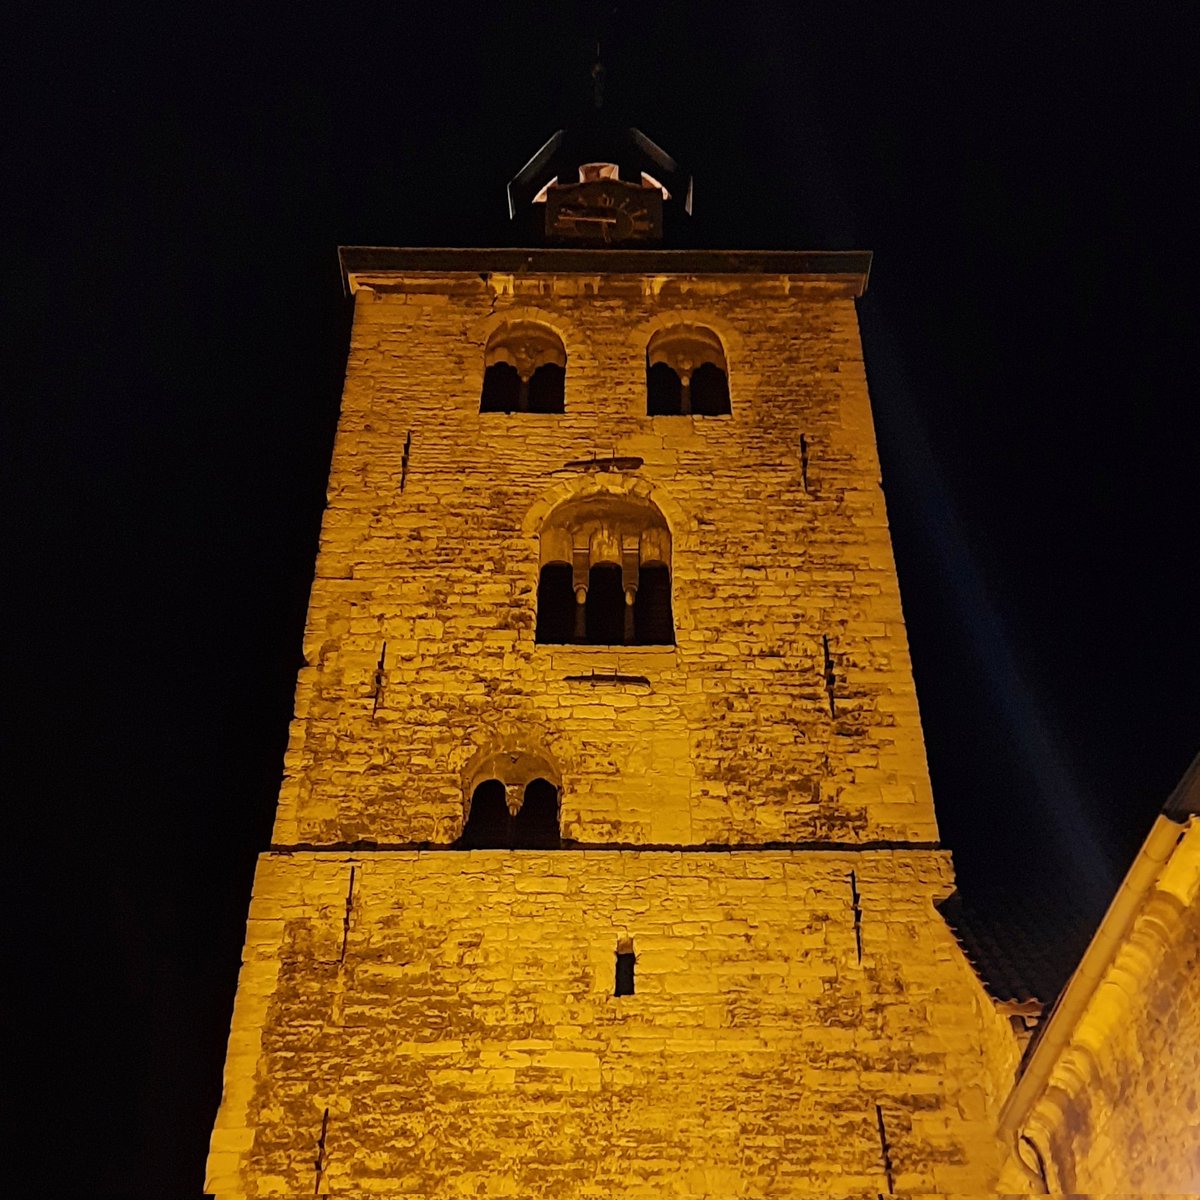 So festlich beleuchtet sehen Marktplatz und Kirchturm der Stadtkirche derzeit am Abend aus. #UnserSchönesKönigslutter